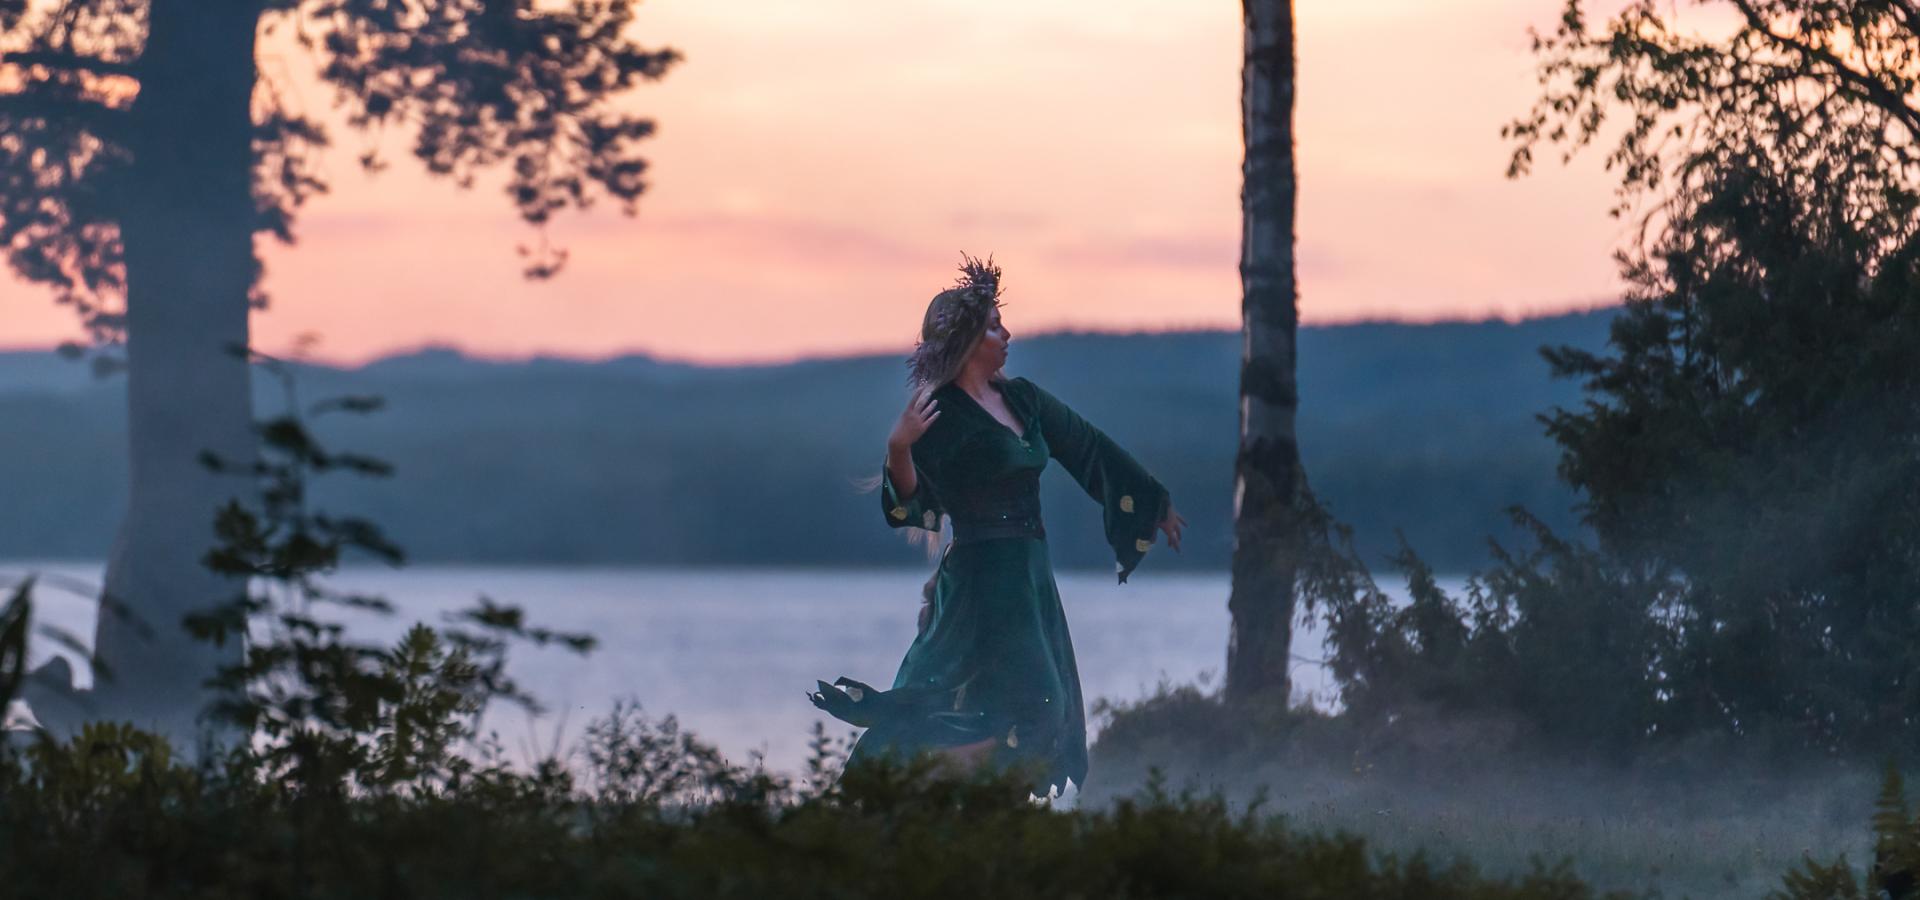 En kvinna dansar i skymning med en sjö i bakgrunden.